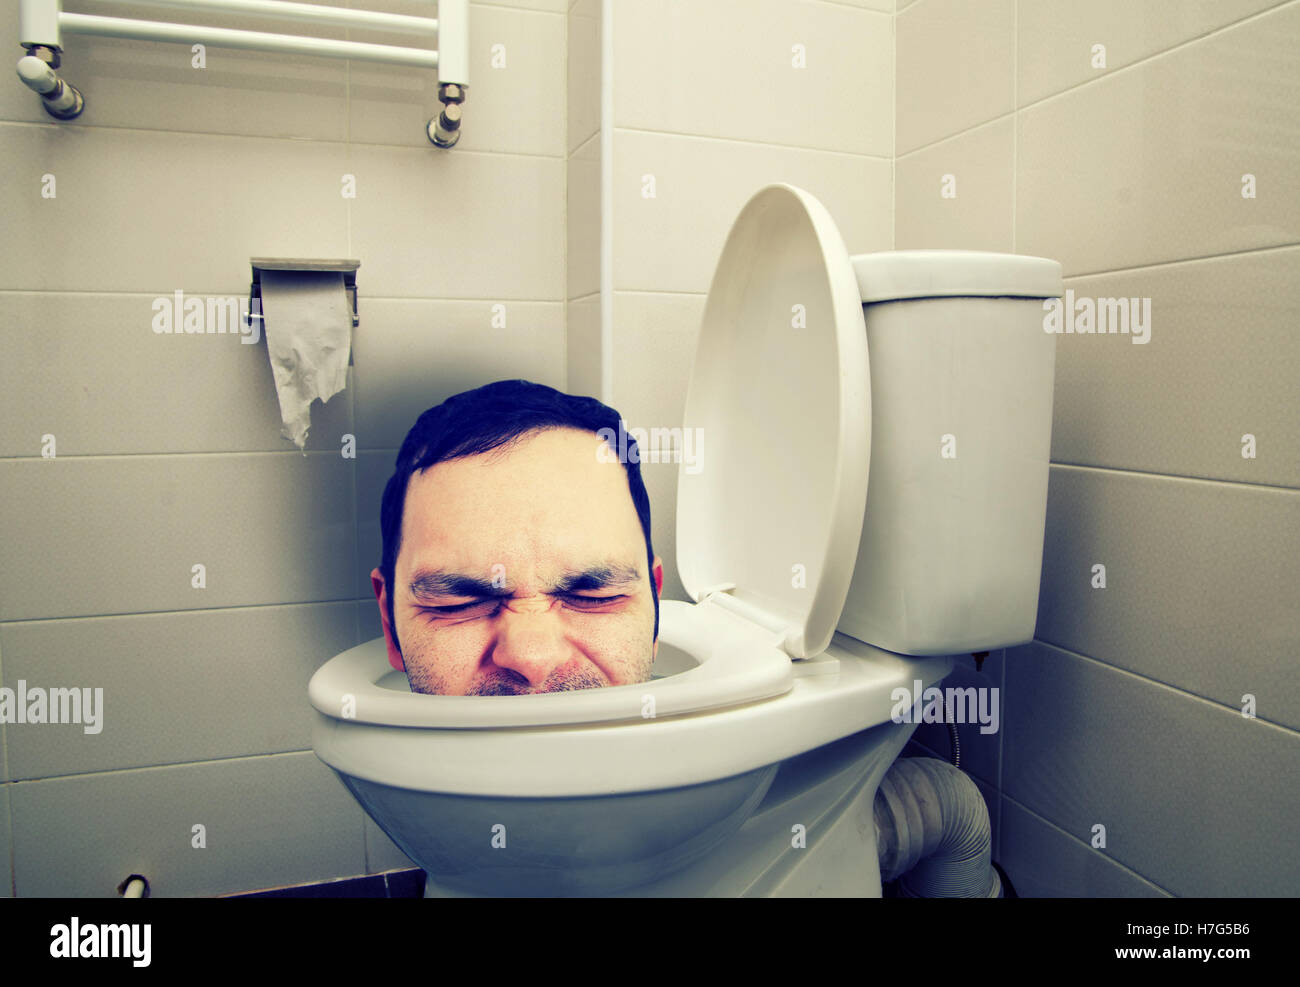 Drôle de tête de l'homme dans les toilettes Photo Stock - Alamy